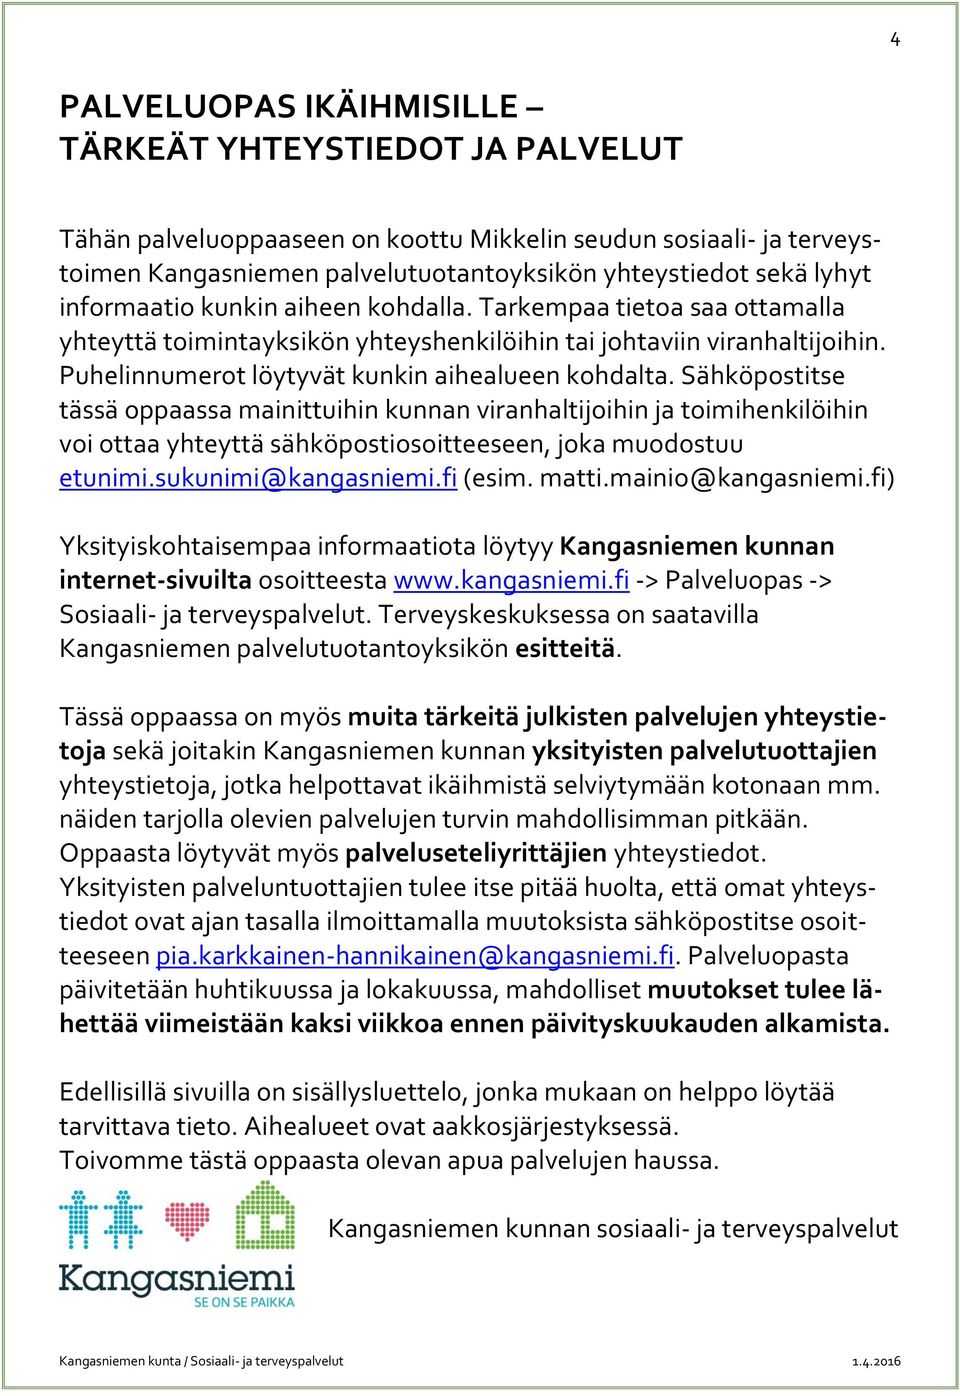 Sähköpostitse tässä oppaassa mainittuihin kunnan viranhaltijoihin ja toimihenkilöihin voi ottaa yhteyttä sähköpostiosoitteeseen, joka muodostuu etunimi.sukunimi@kangasniemi.fi (esim. matti.